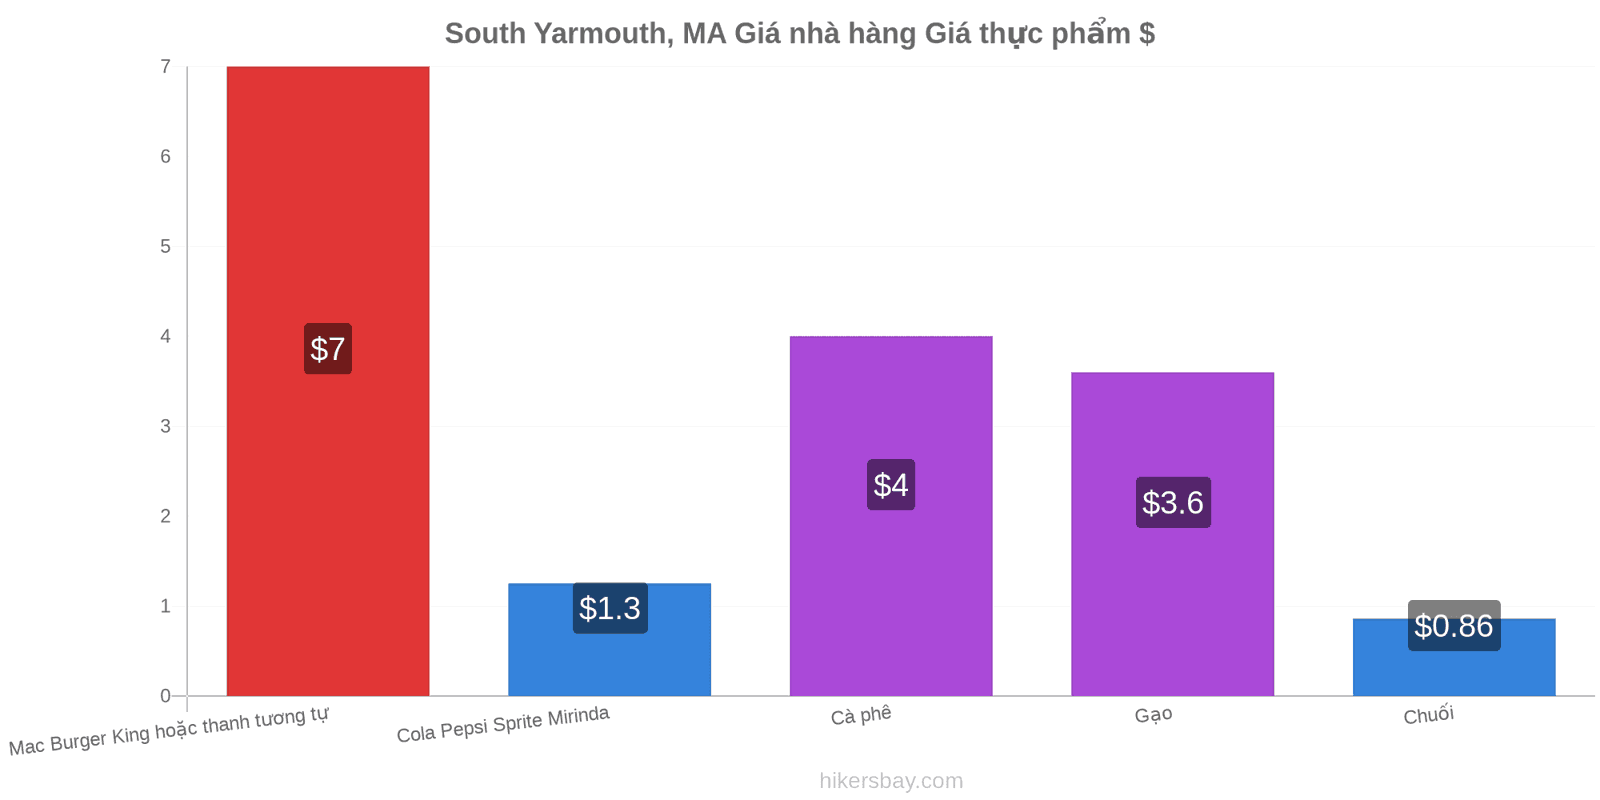 South Yarmouth, MA thay đổi giá cả hikersbay.com